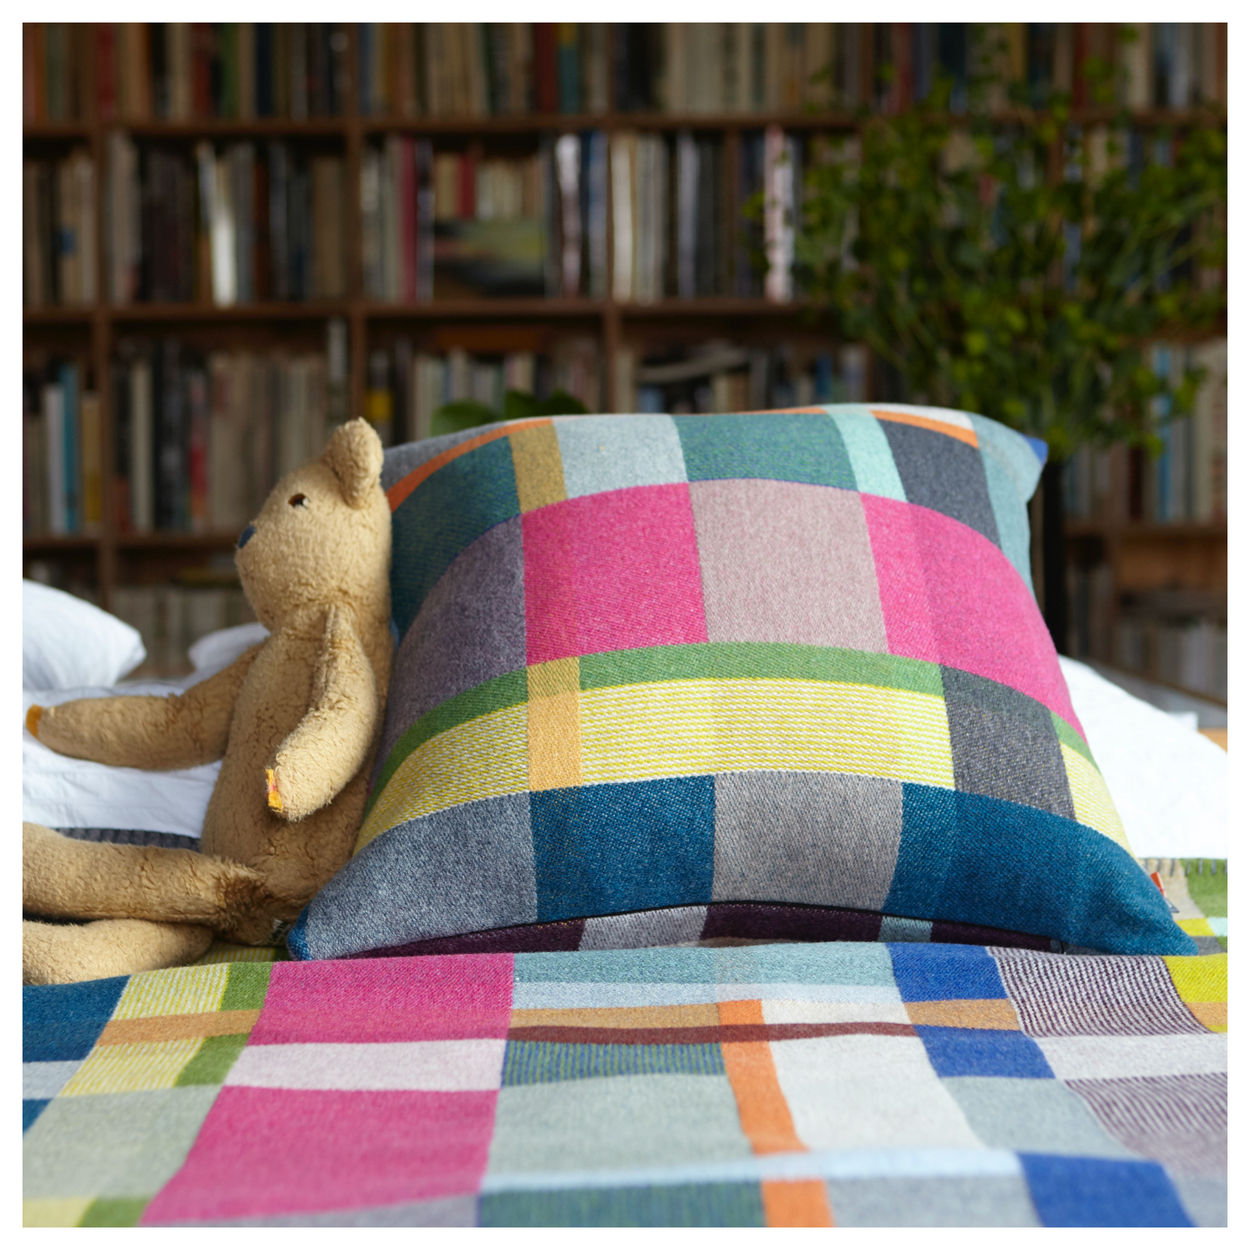 Premium Australian Merino Wool Cushion cover - Gwynne with Block blanket, Gwynne on bed with teddy bear.